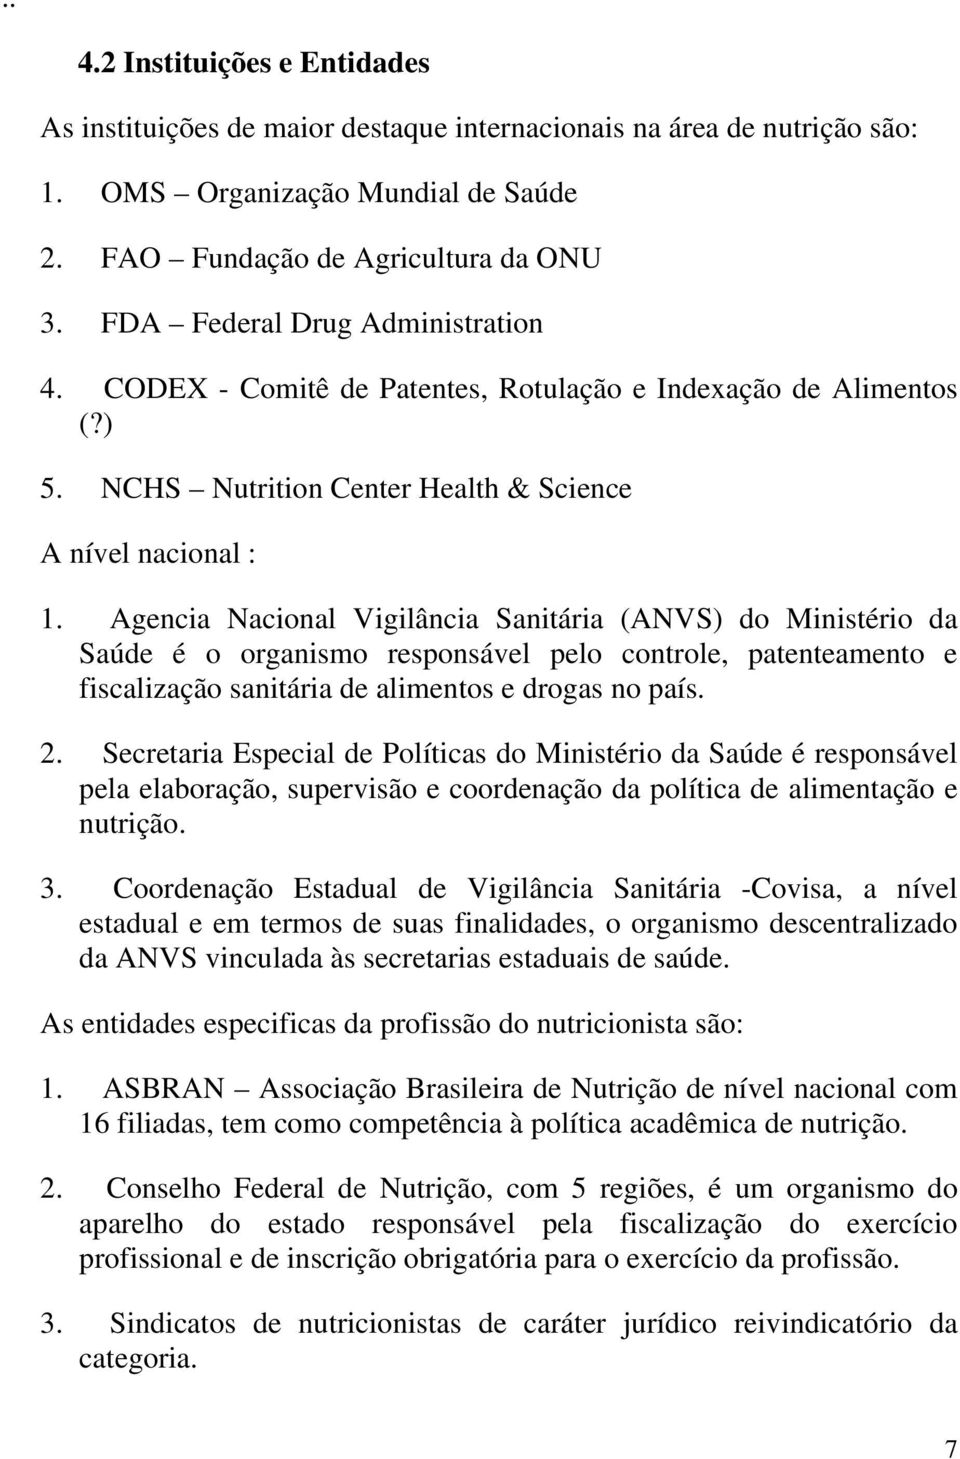 Agencia Nacional Vigilância Sanitária (ANVS) do Ministério da Saúde é o organismo responsável pelo controle, patenteamento e fiscalização sanitária de alimentos e drogas no país. 2.